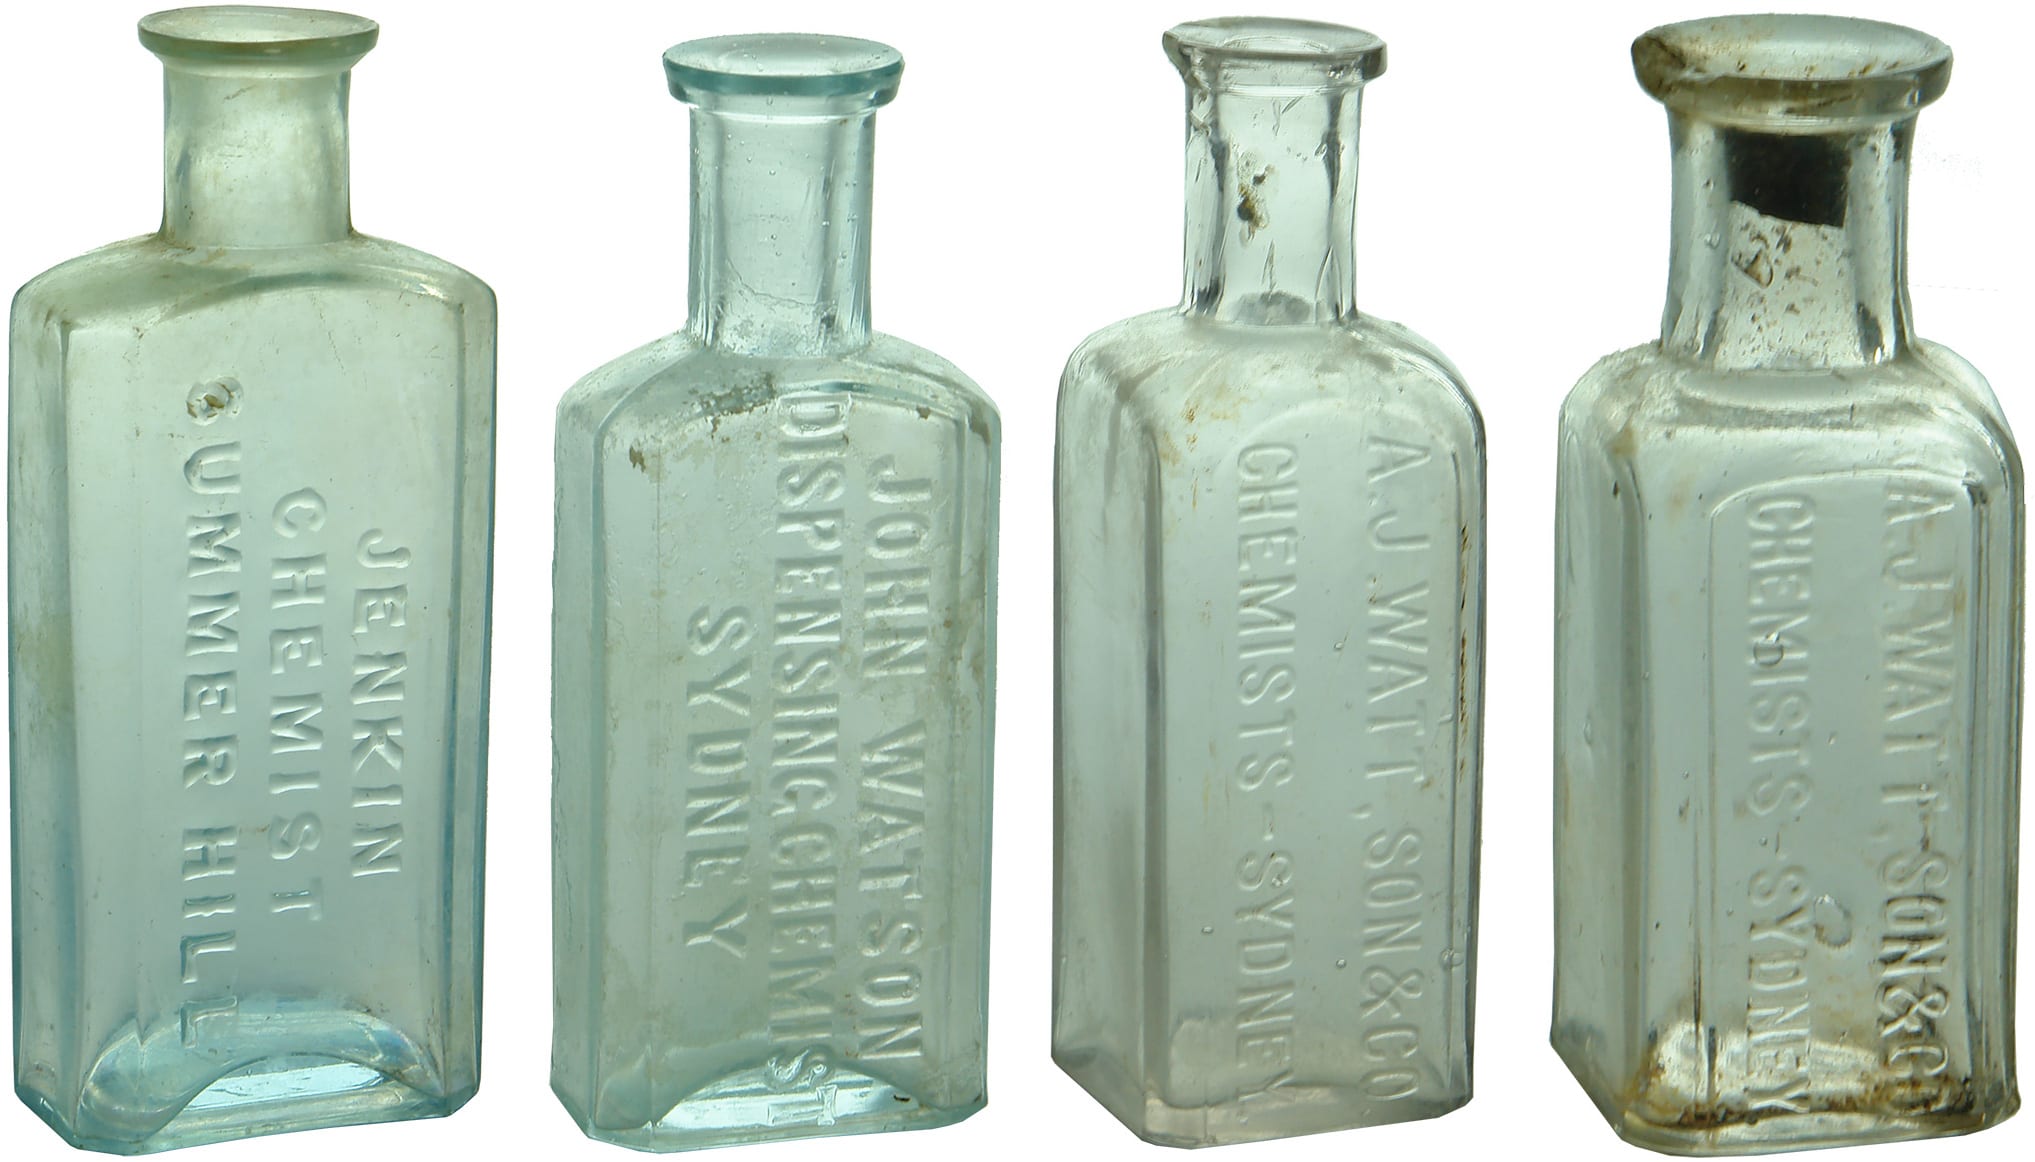 Antique Sydney Chemist Prescription Bottles